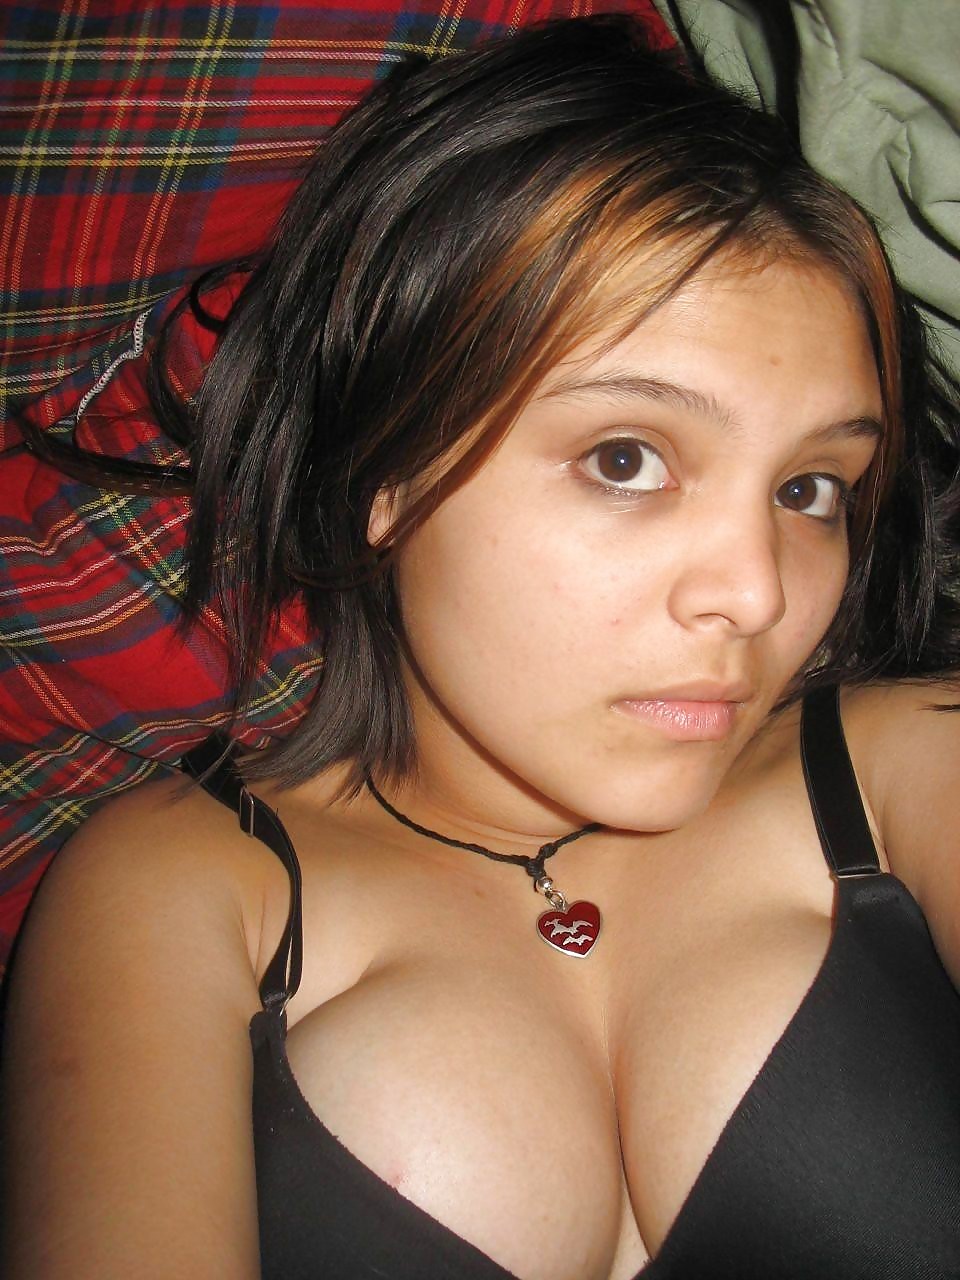 Busty Amateur Teen Porn Pictures, XXX Photos, Sex Images #898723 - PICTOA